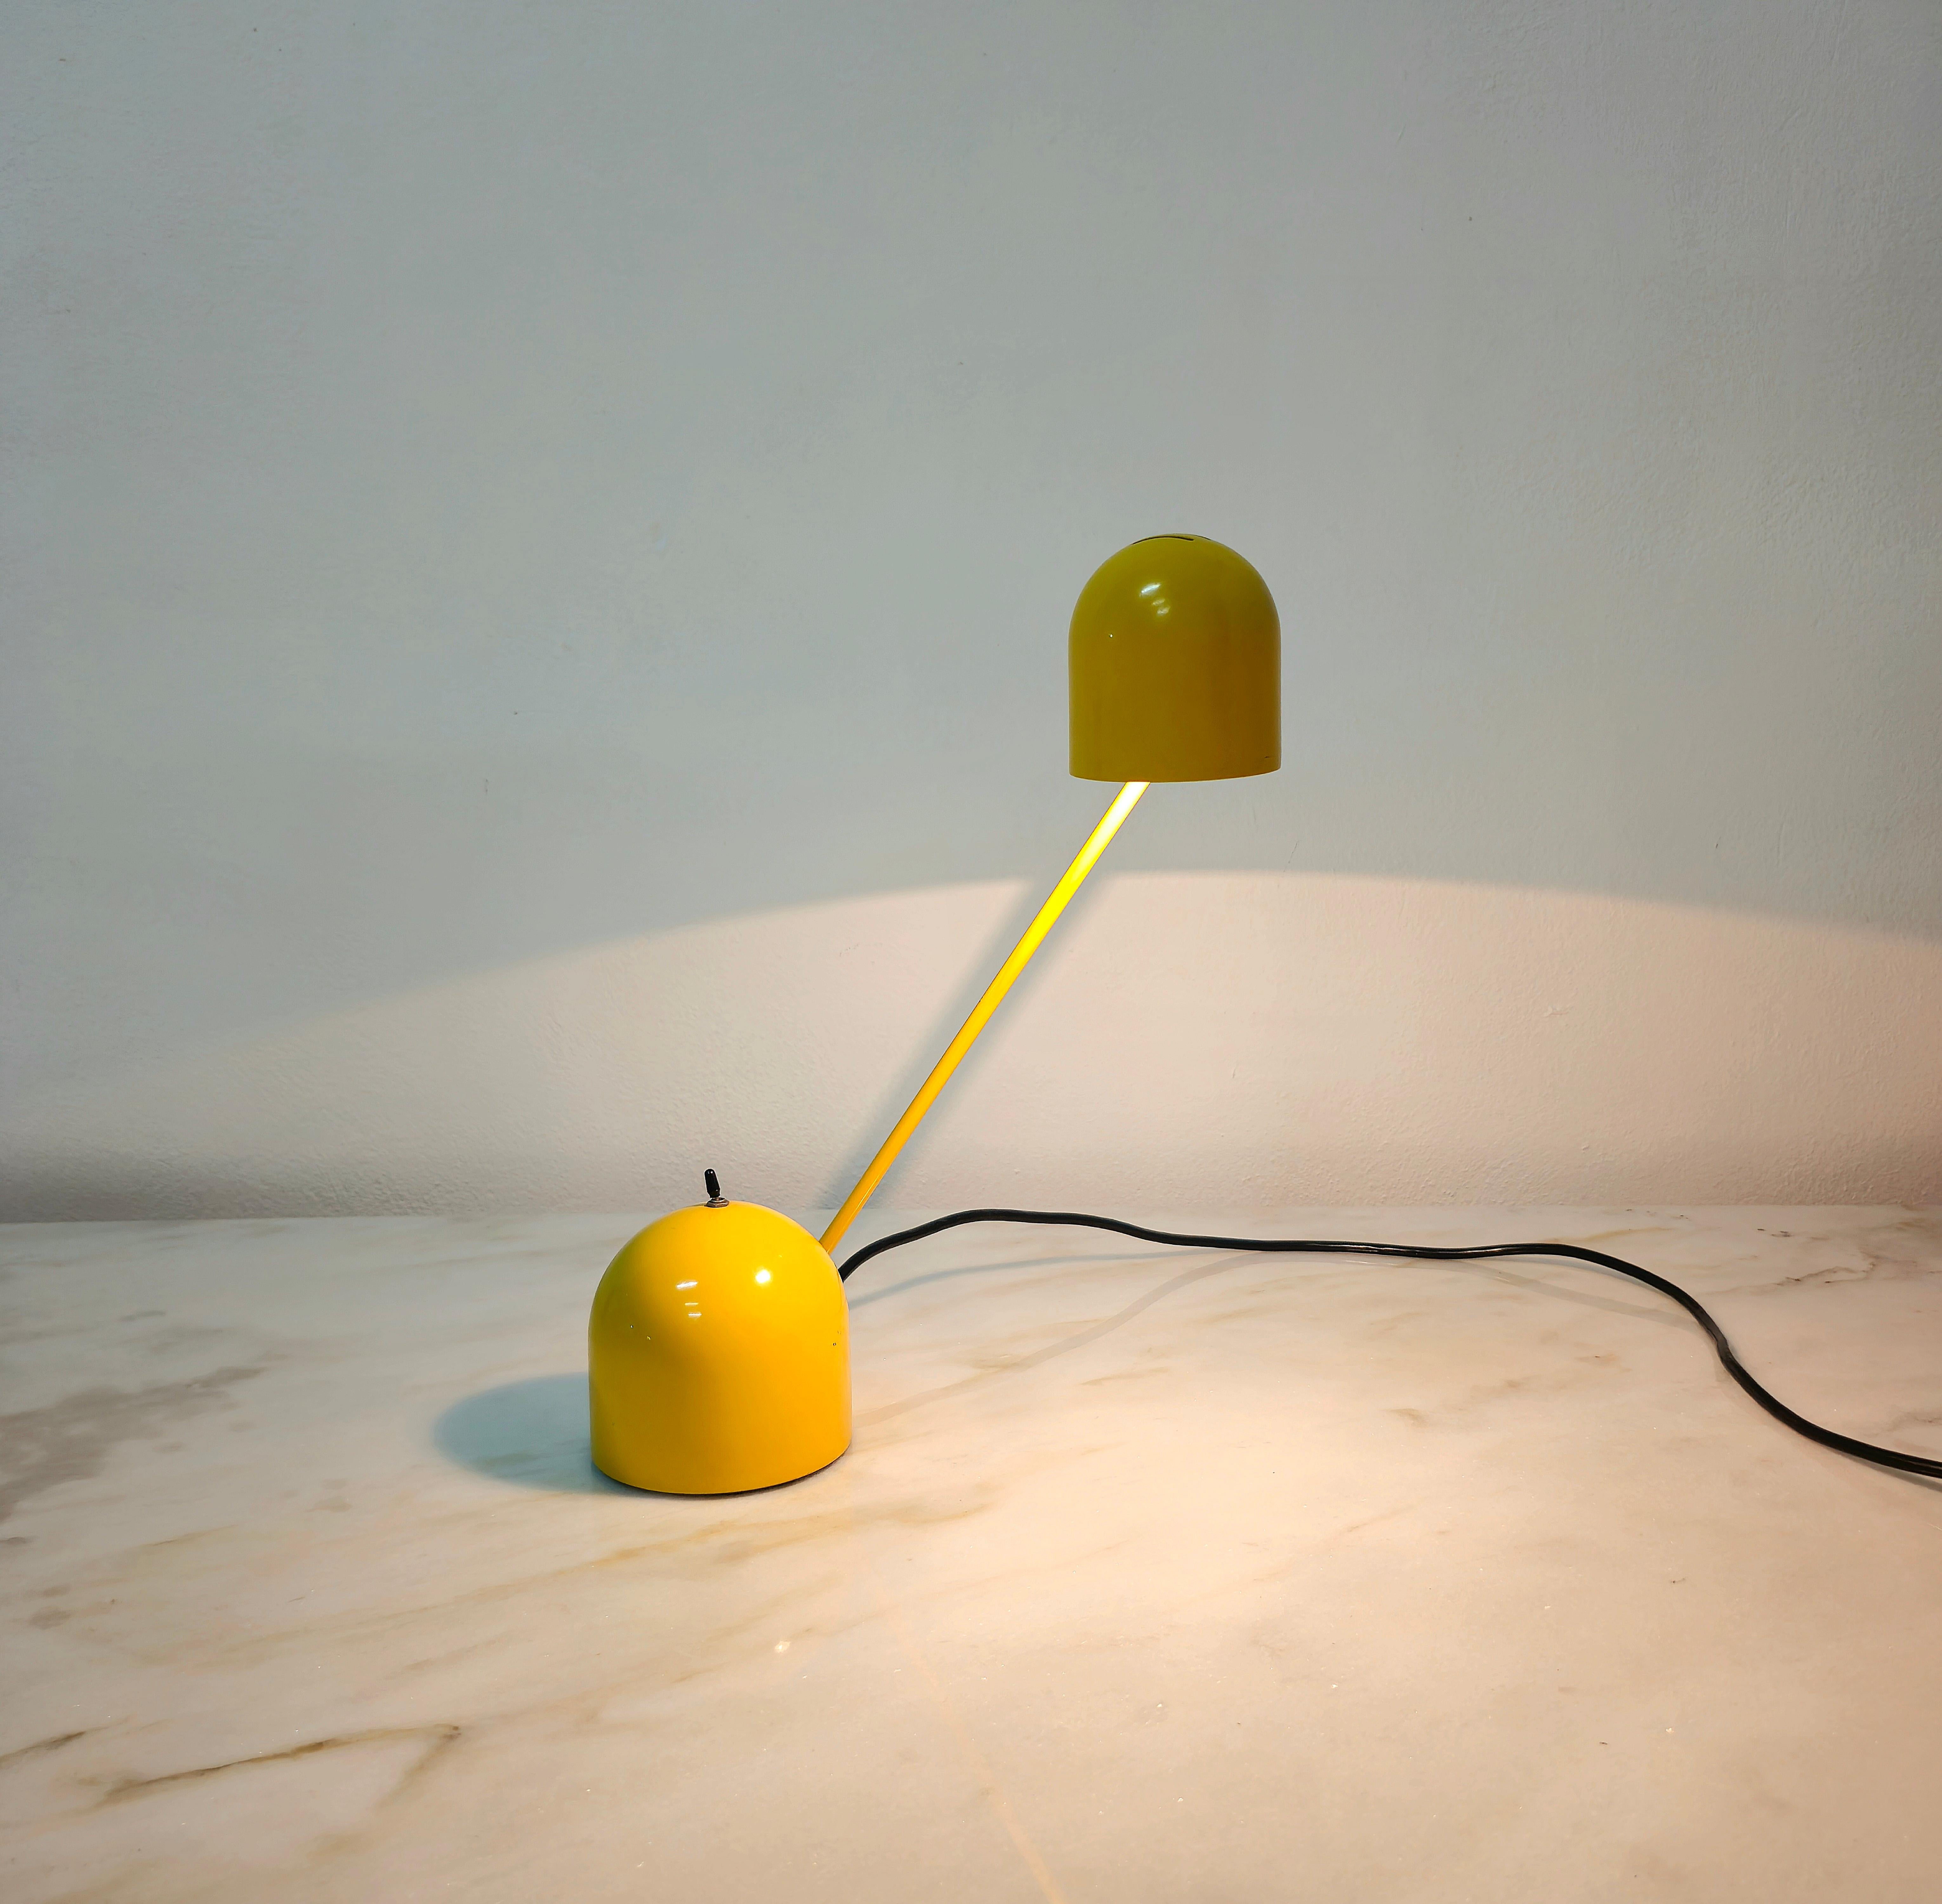 Lampe de table en métal et aluminium émaillé jaune. La particularité de cette lampe est donnée par sa multifonctionnalité, car tant le bras que le diffuseur peuvent être orientés, et grâce à l'interrupteur il est possible de diminuer et d'augmenter